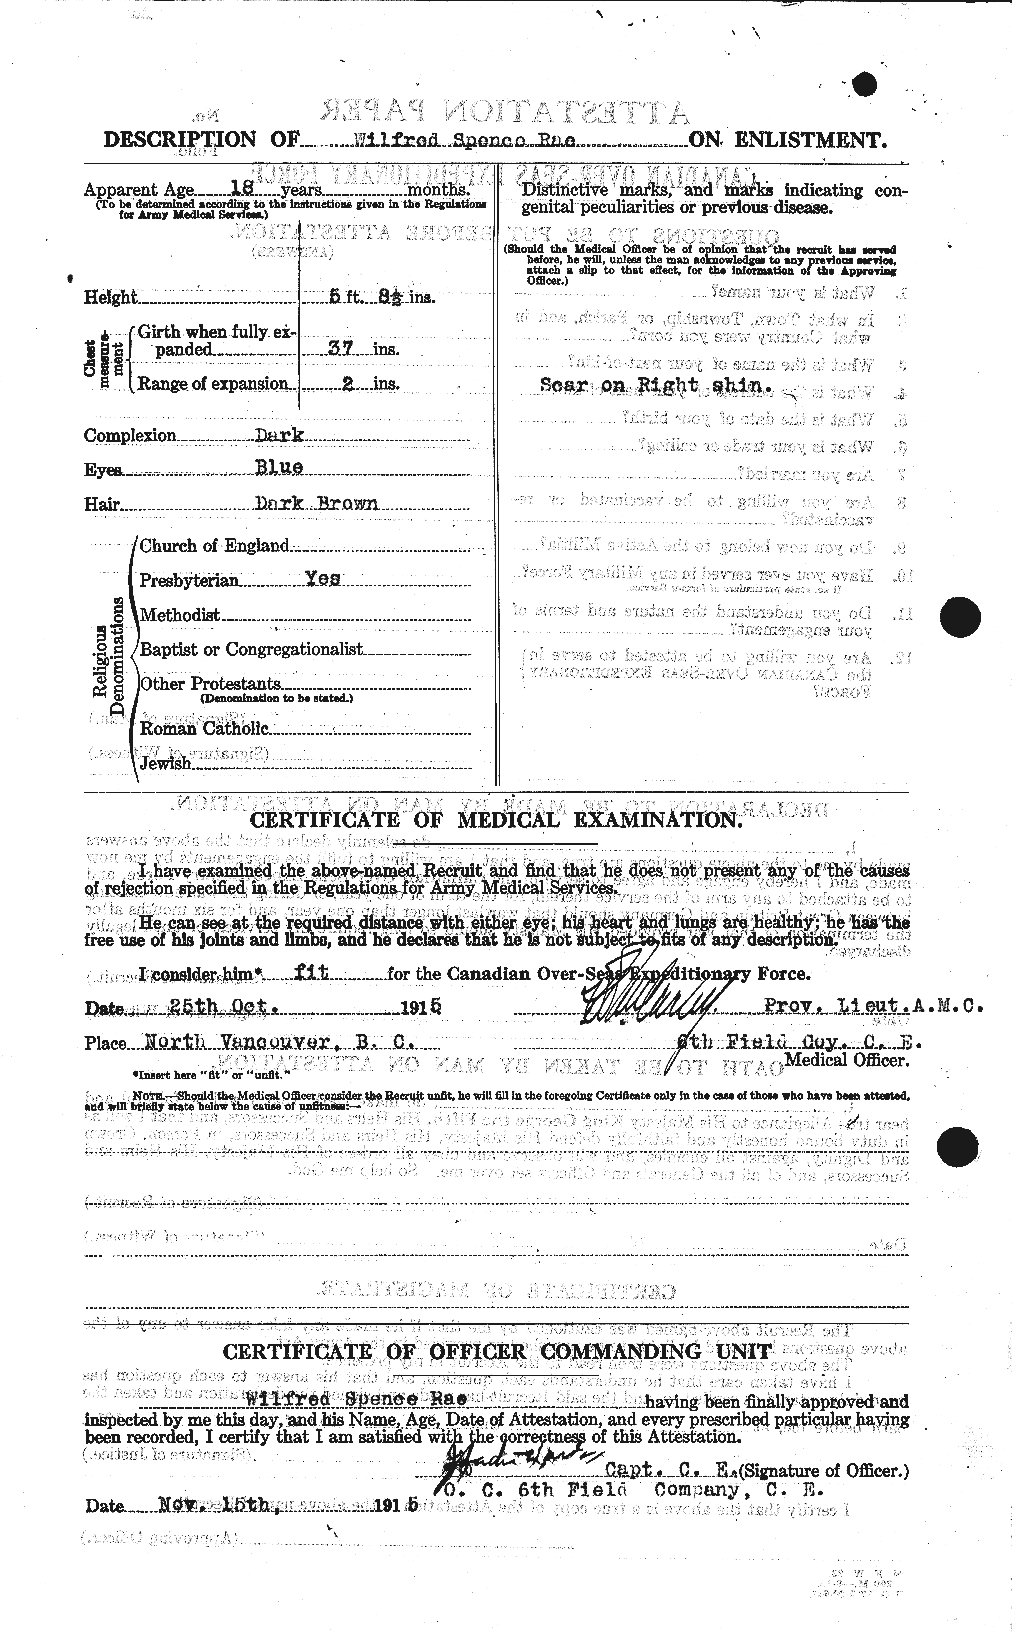 Dossiers du Personnel de la Première Guerre mondiale - CEC 591606b